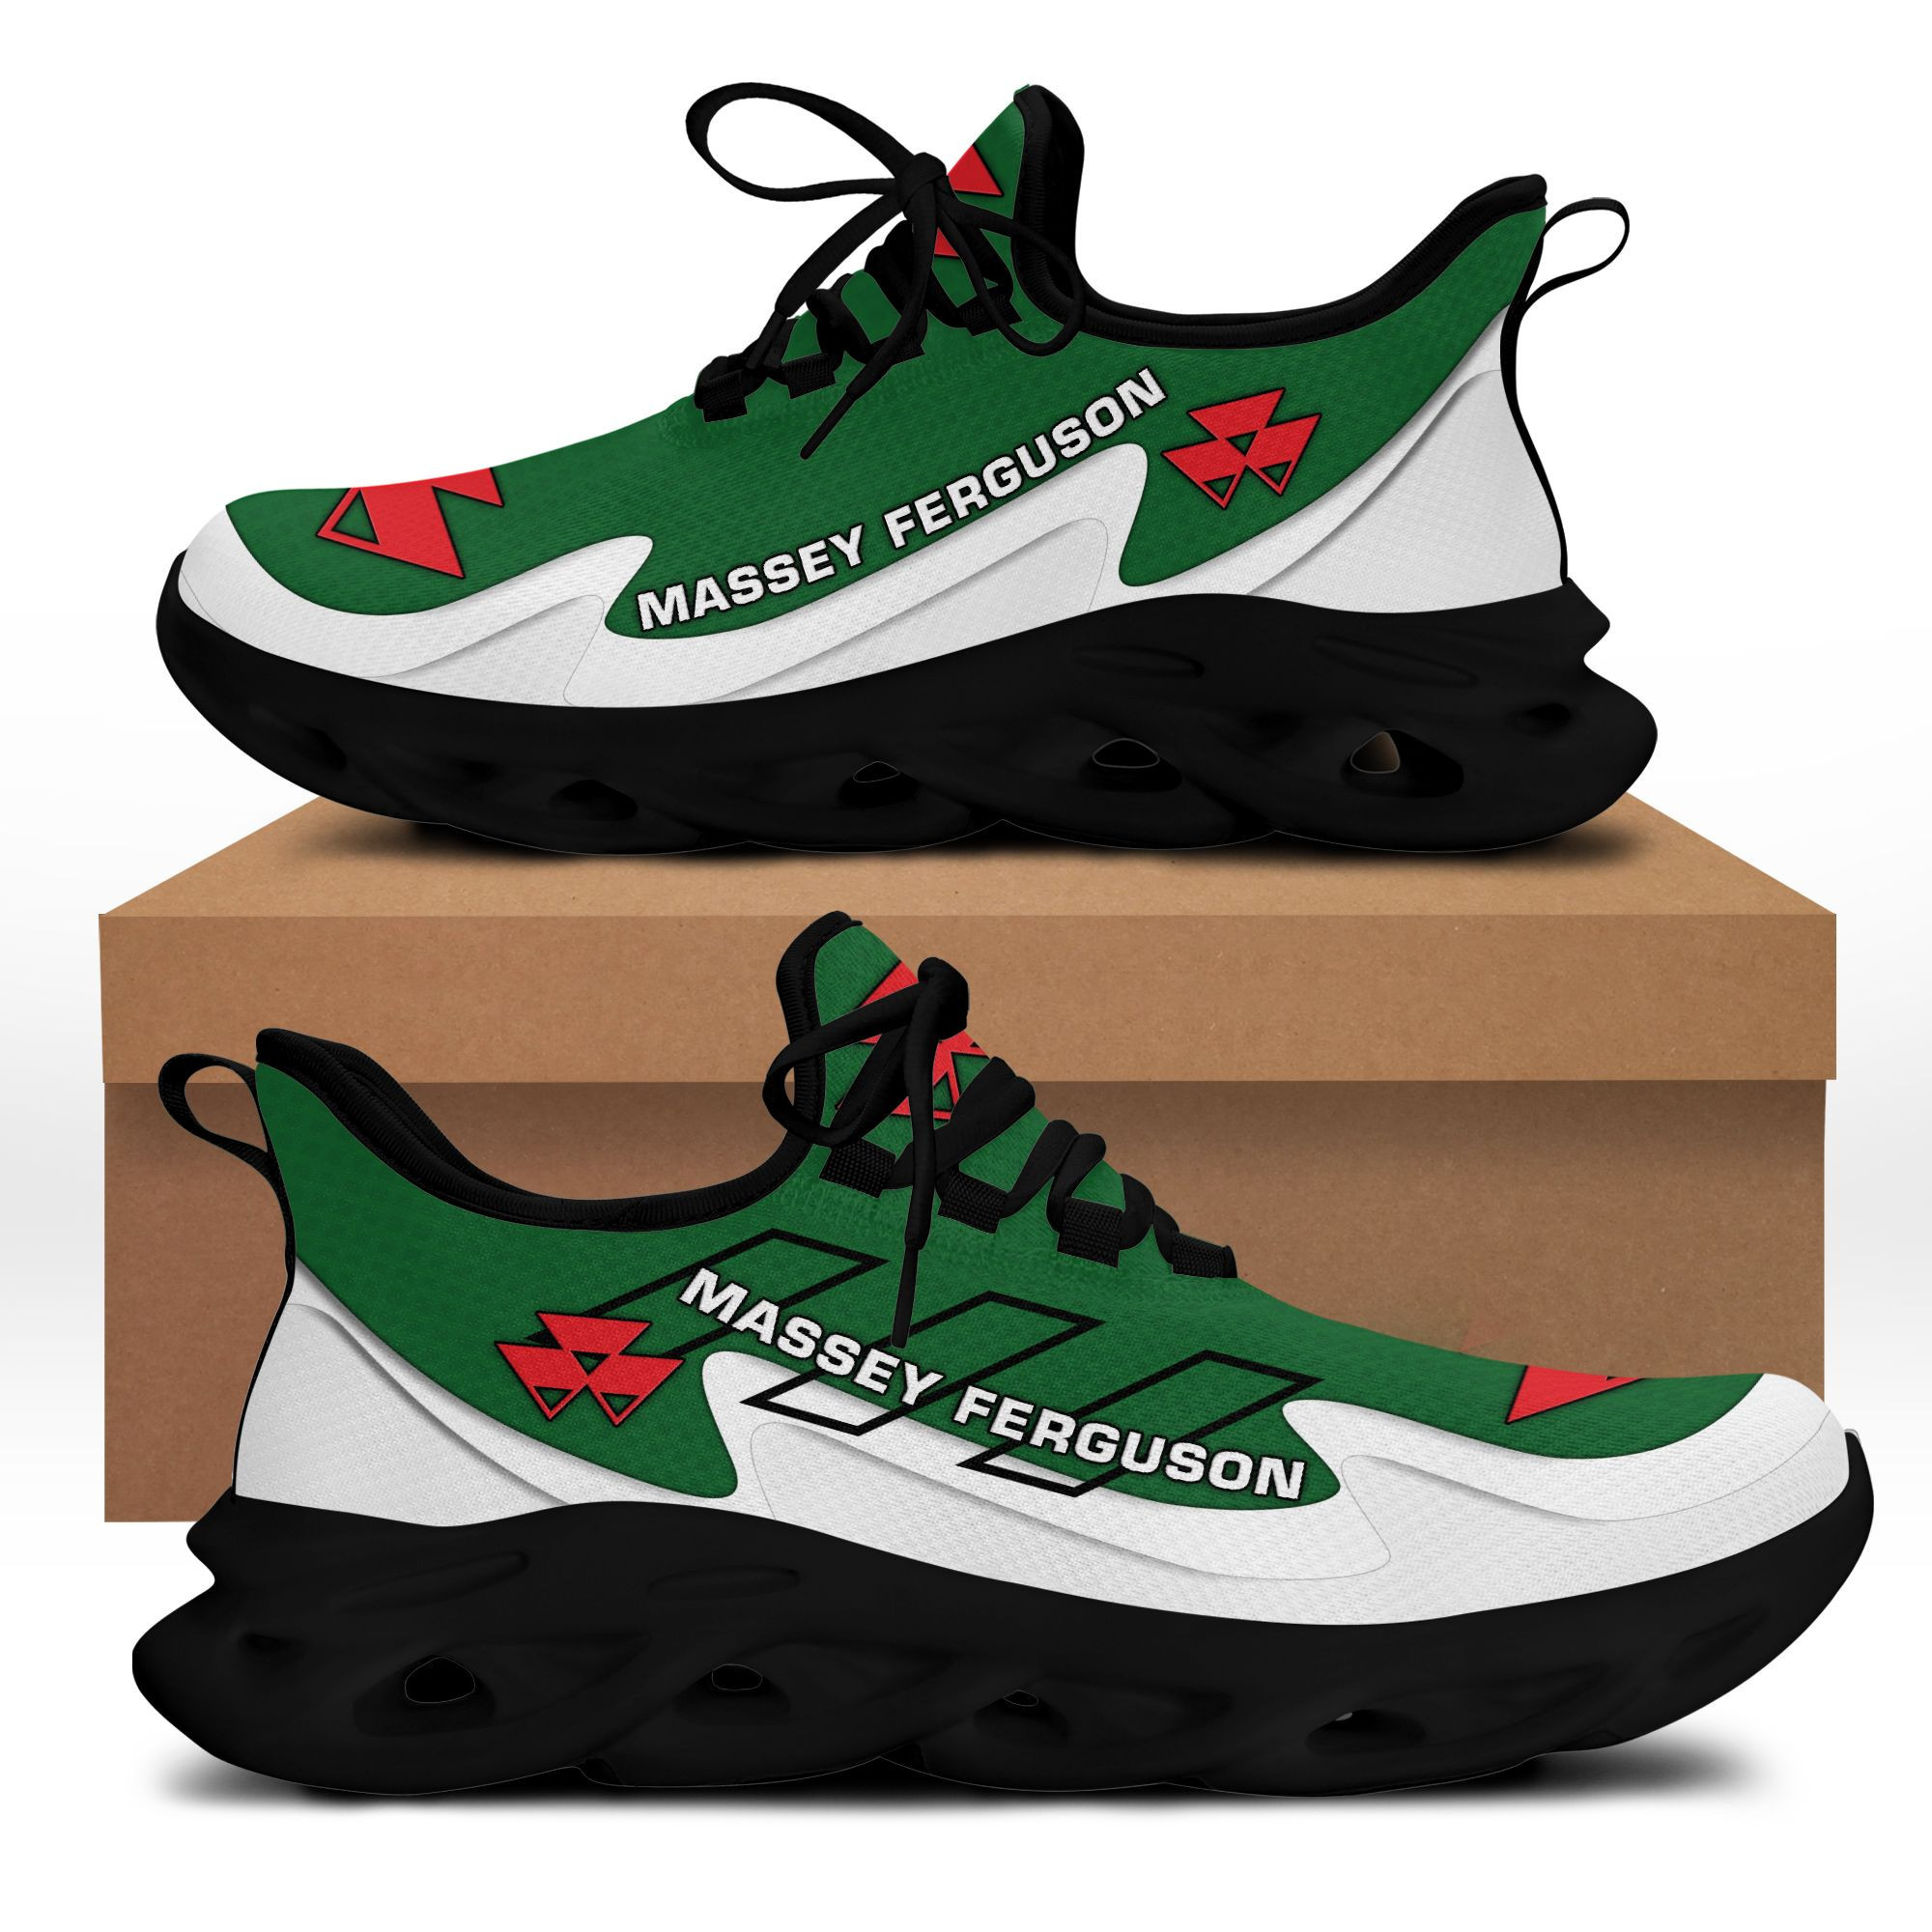 Massey Ferguson Bs Running Shoes Ver 4 (Green)